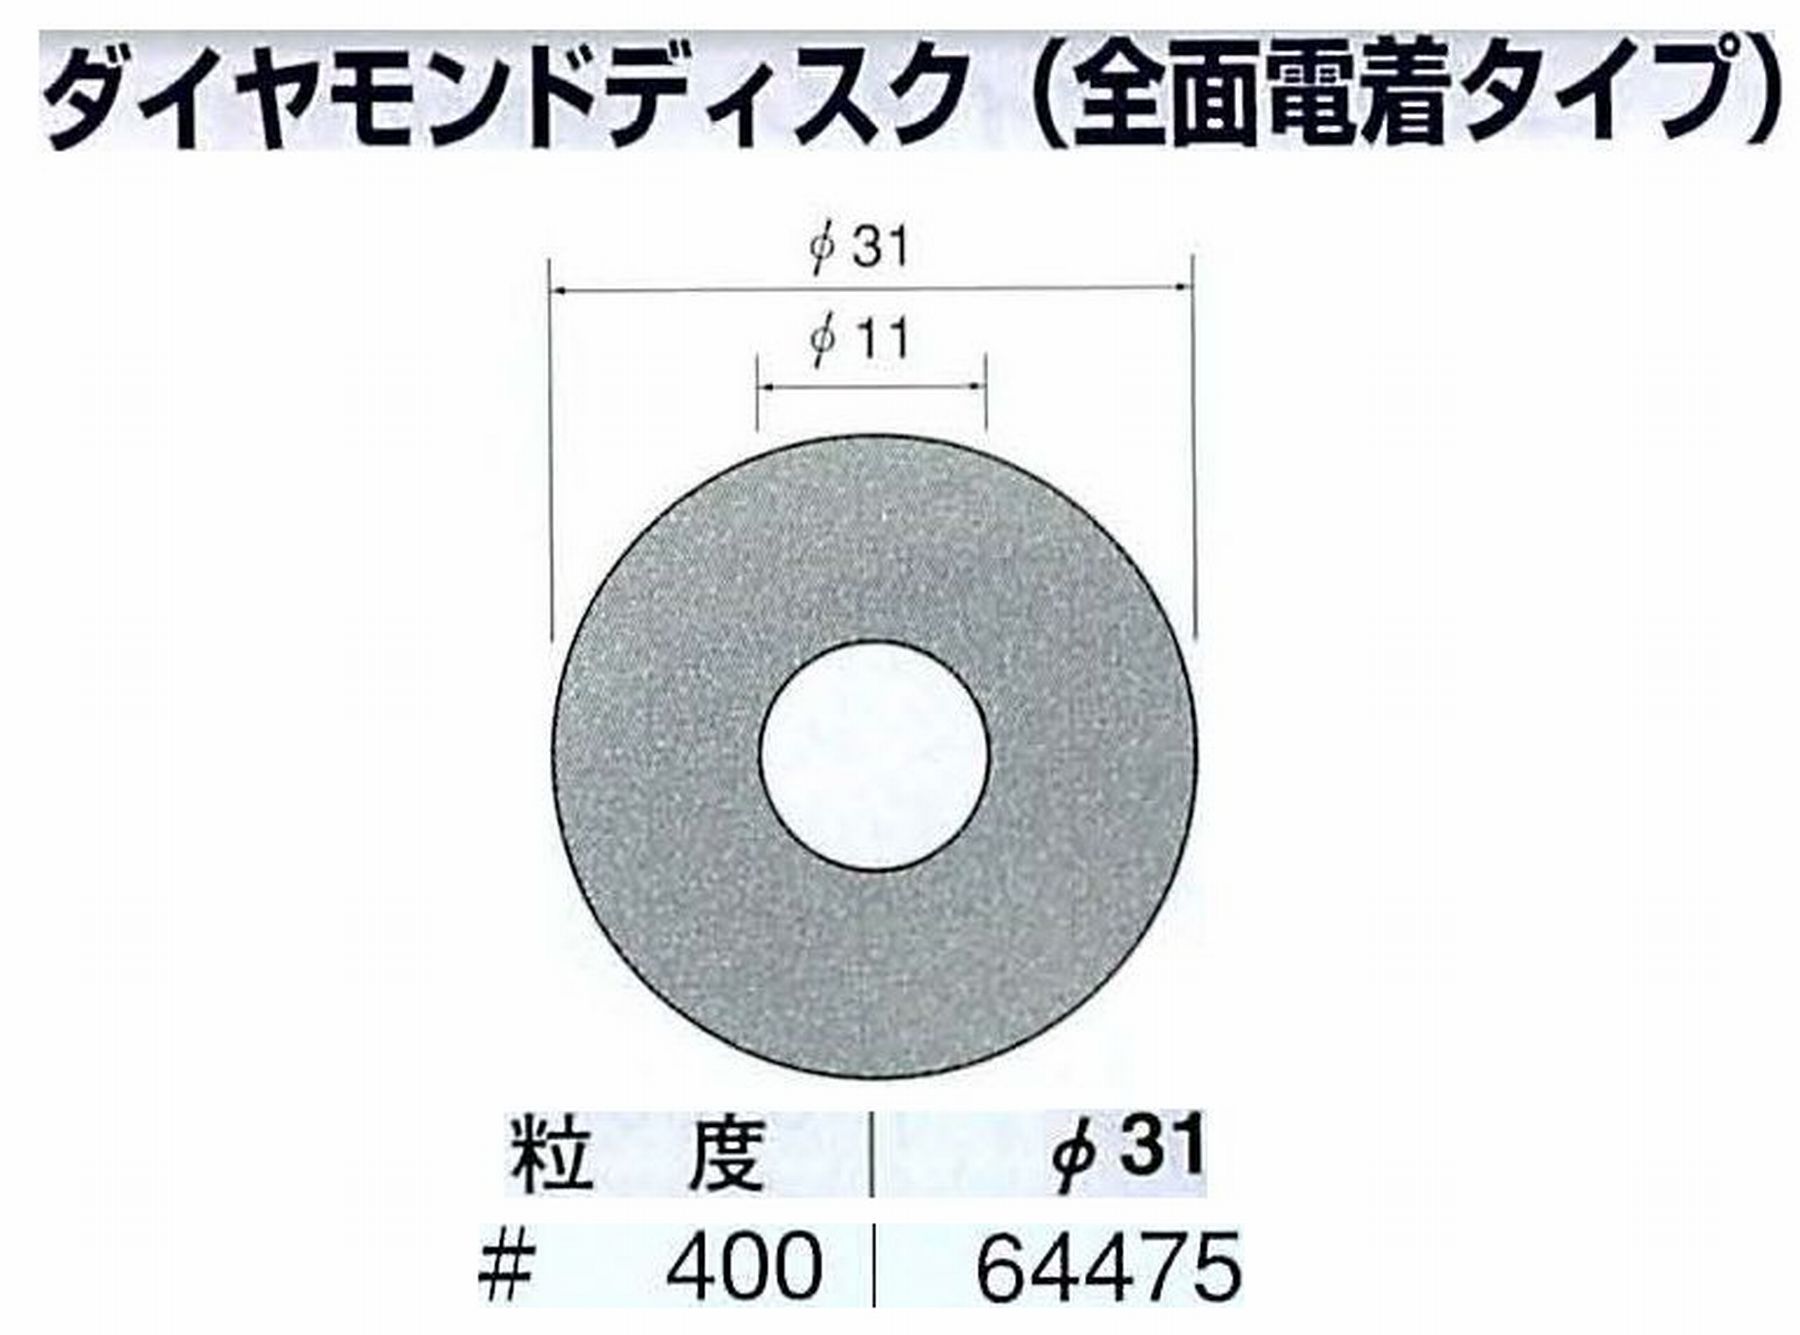 ナカニシ/NAKANISHI アングルグラインダ(電動・エアー) アングルアタッチメント専用工具 ダイヤモンドディスク(全面電着タイプ) 64475